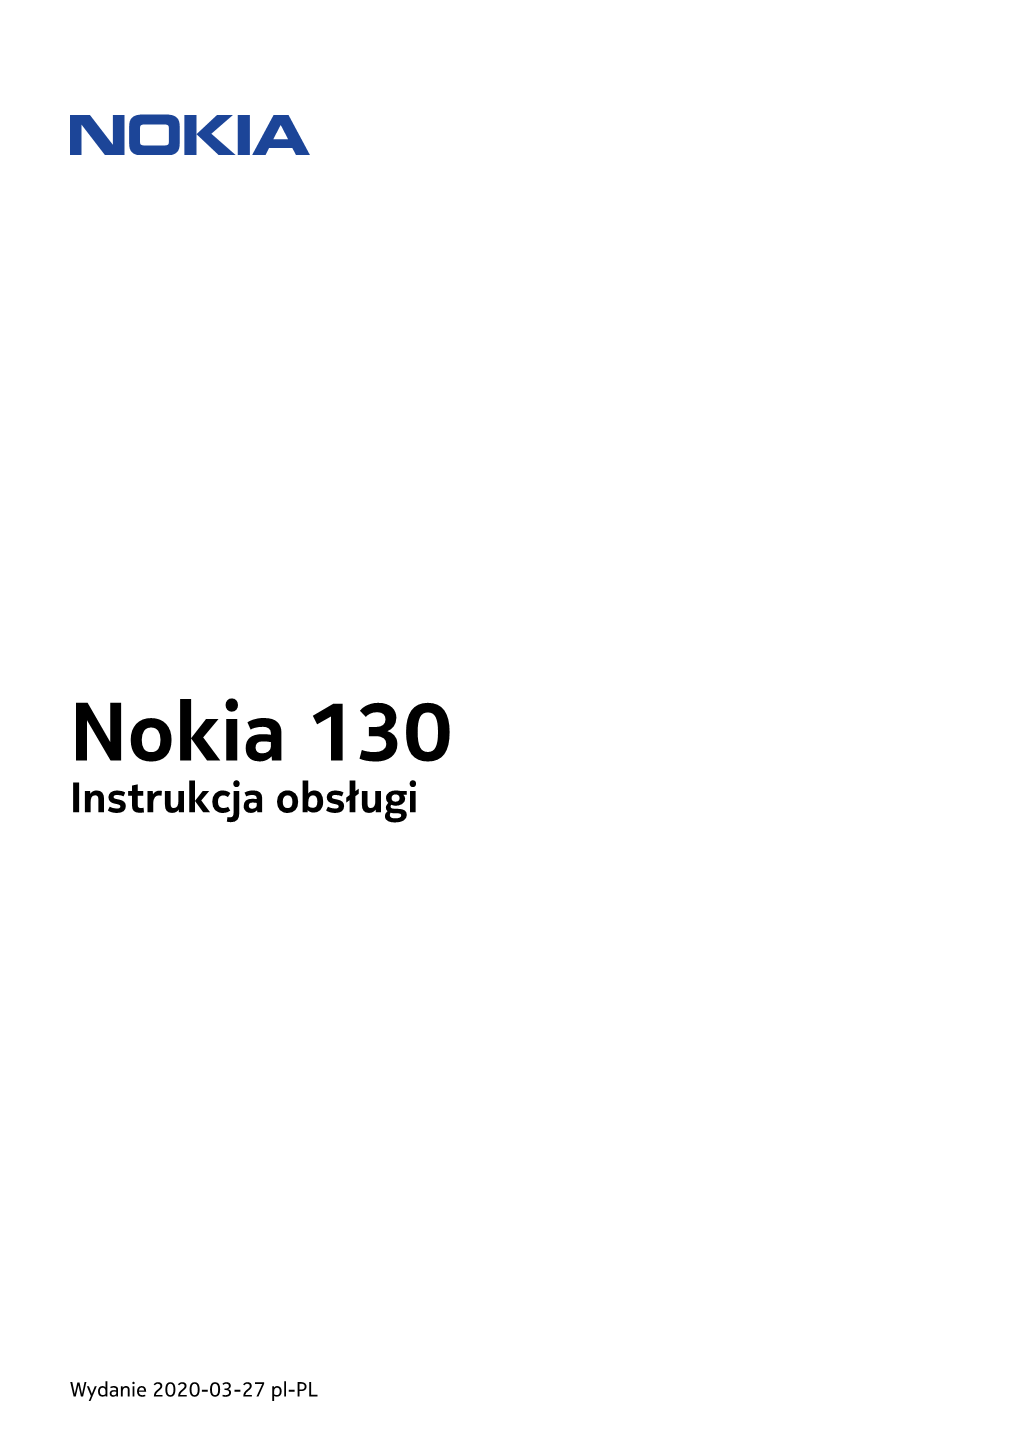 Nokia 130 Instrukcja Obsługi Pdfdisplaydoctitle=True Pdflang=Pl-PL